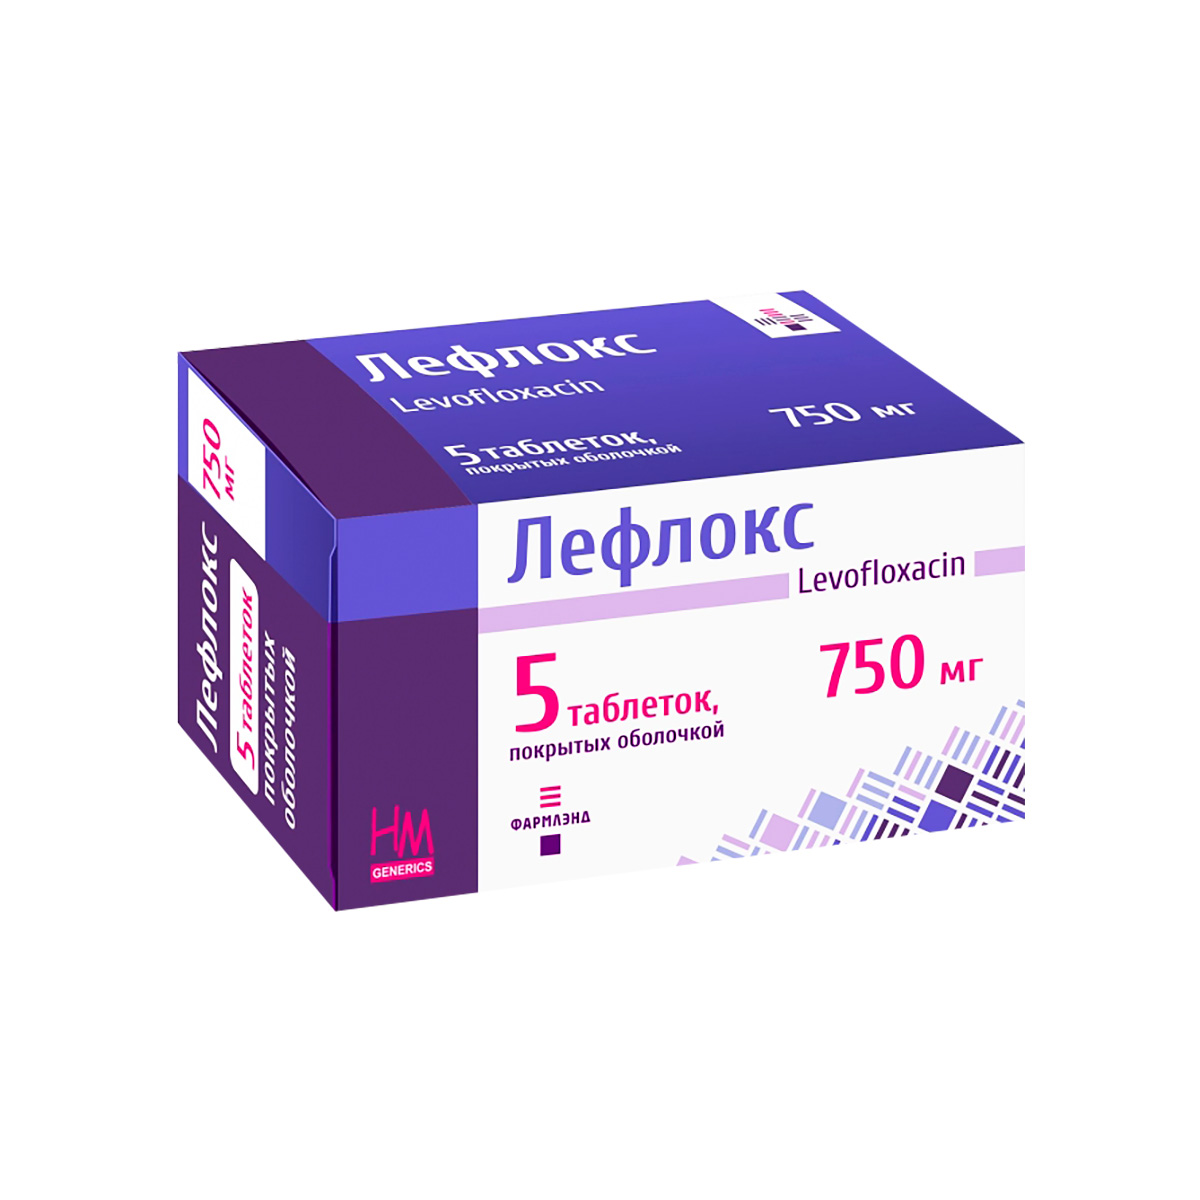 Лефлокс 750 мг таблетки покрытые пленочной оболочкой 5 шт